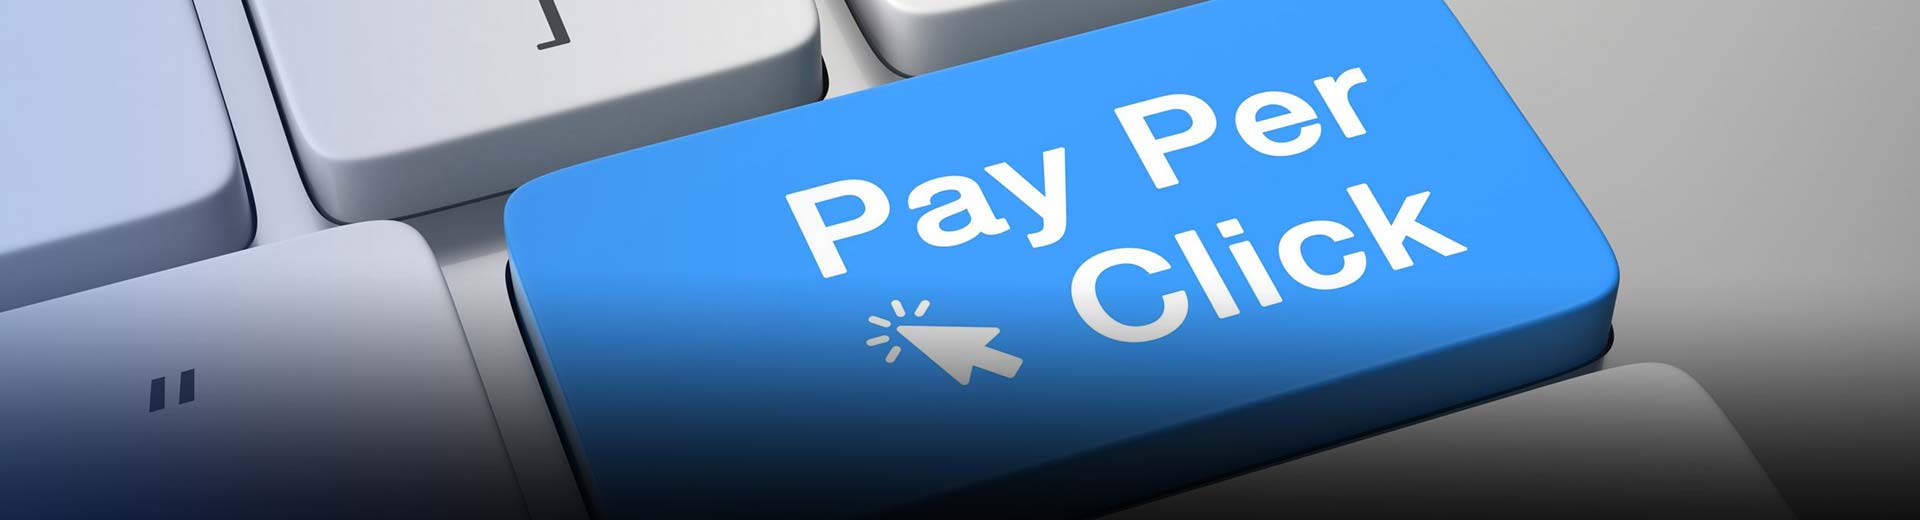 Promuj programy partnerskie Pay Per Click